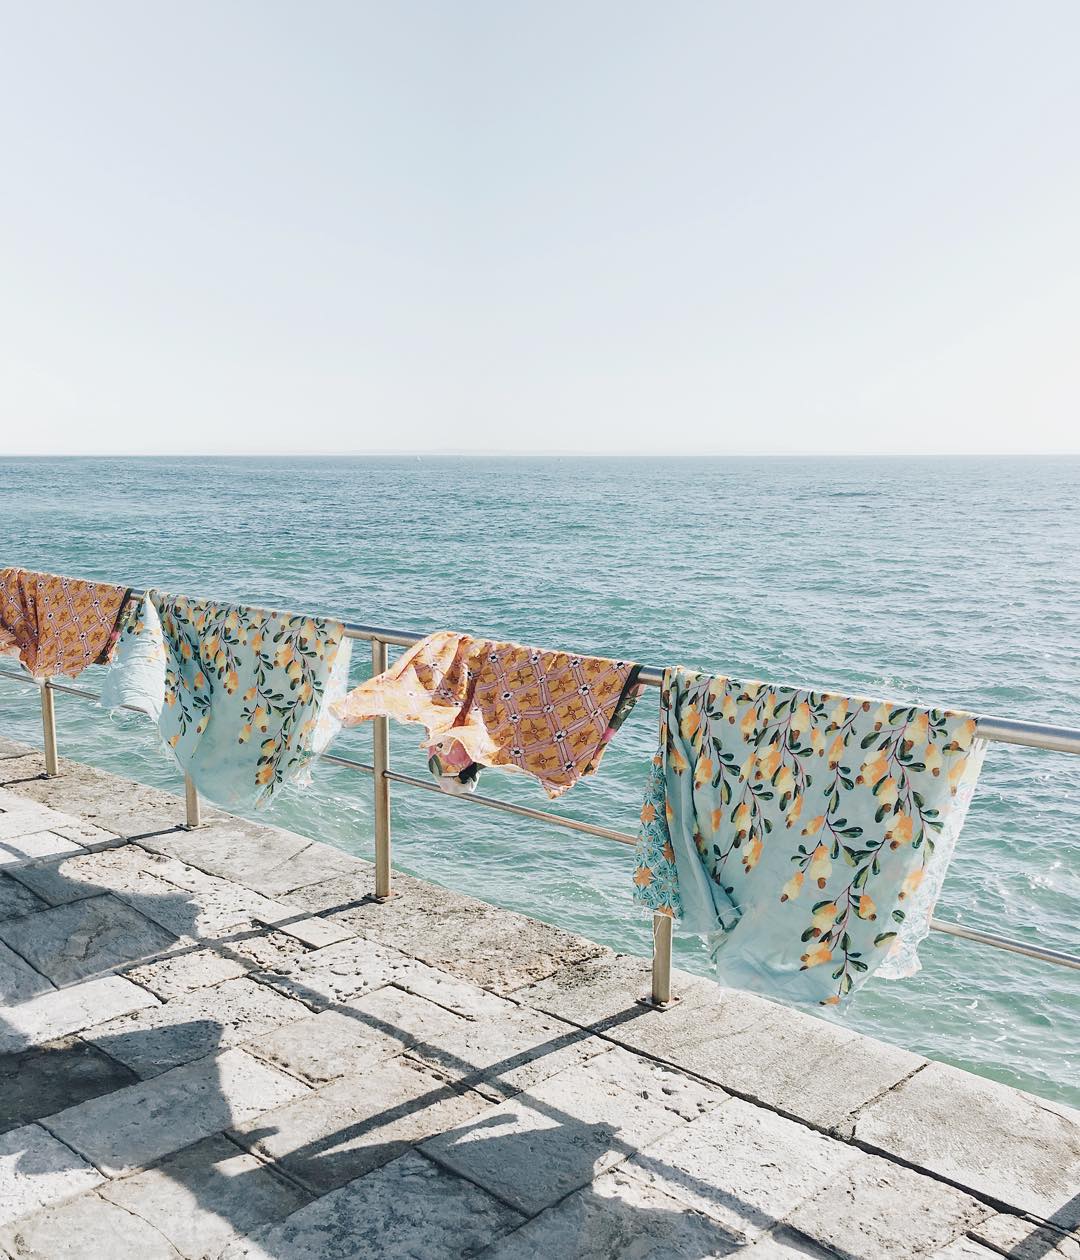 Photographie pastel de linges suspendus au bord de la mer par Teresa Freitas